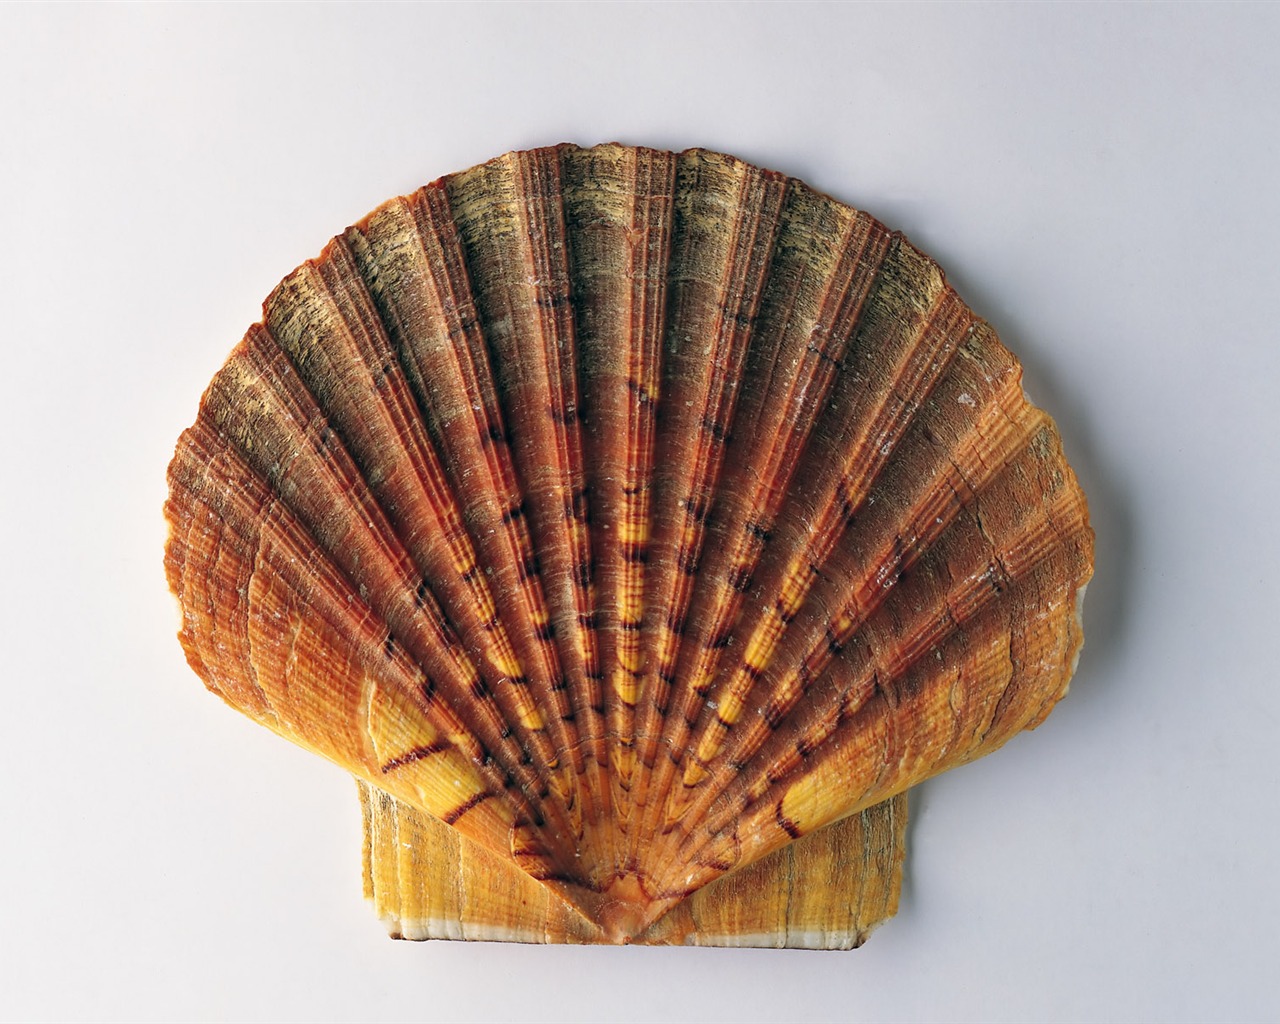 贝壳海螺壁纸专辑(一)14 - 1280x1024